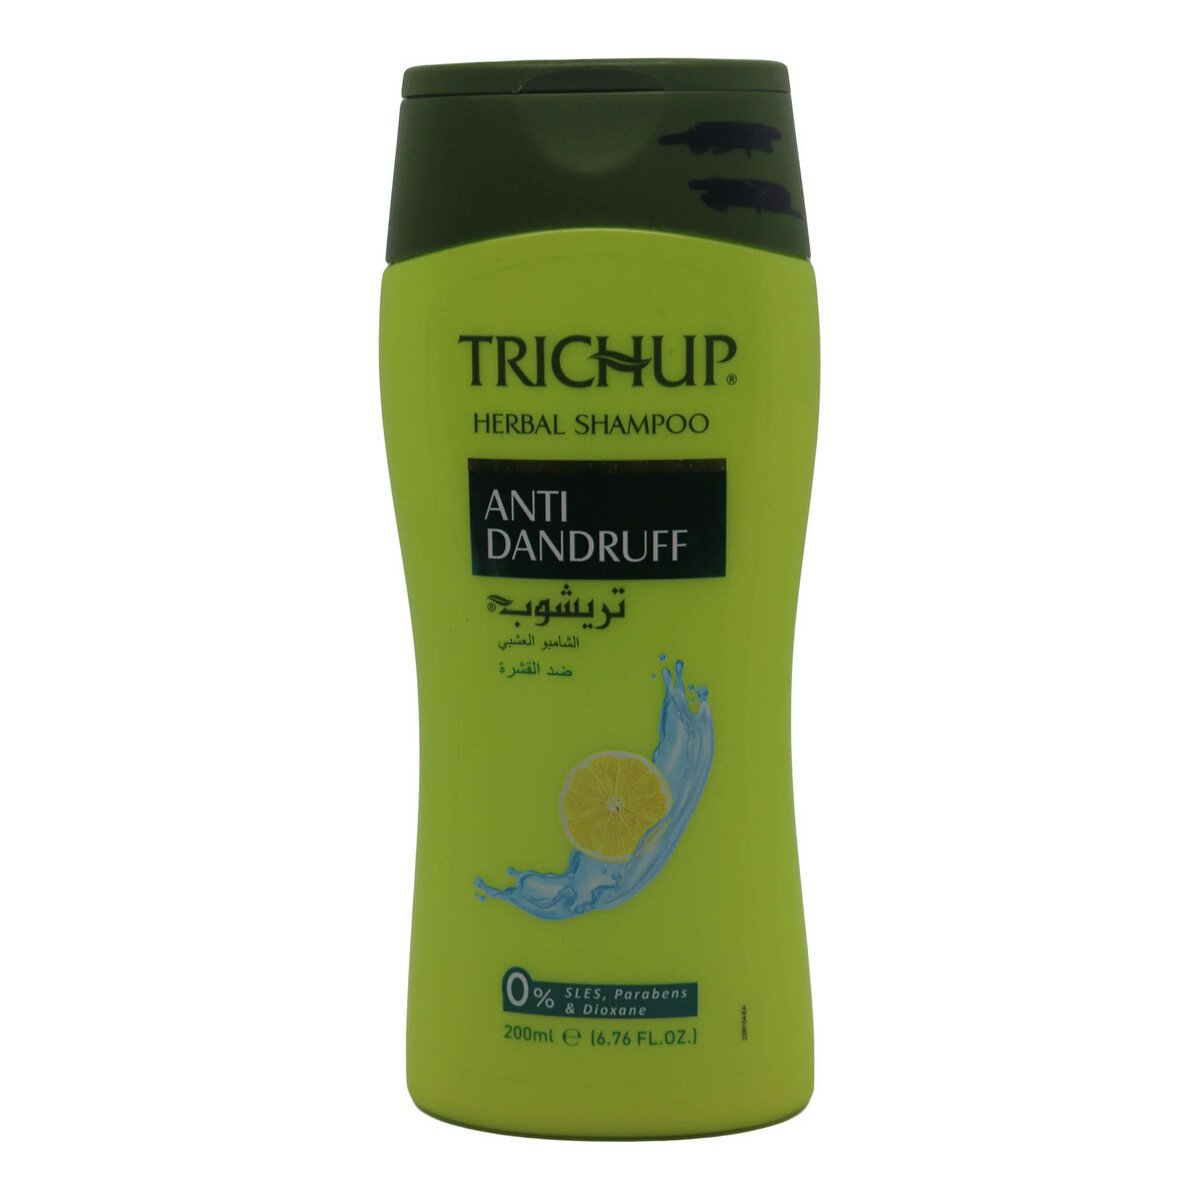 Trichup Anti Dandruff Hair Shampoo 200ml